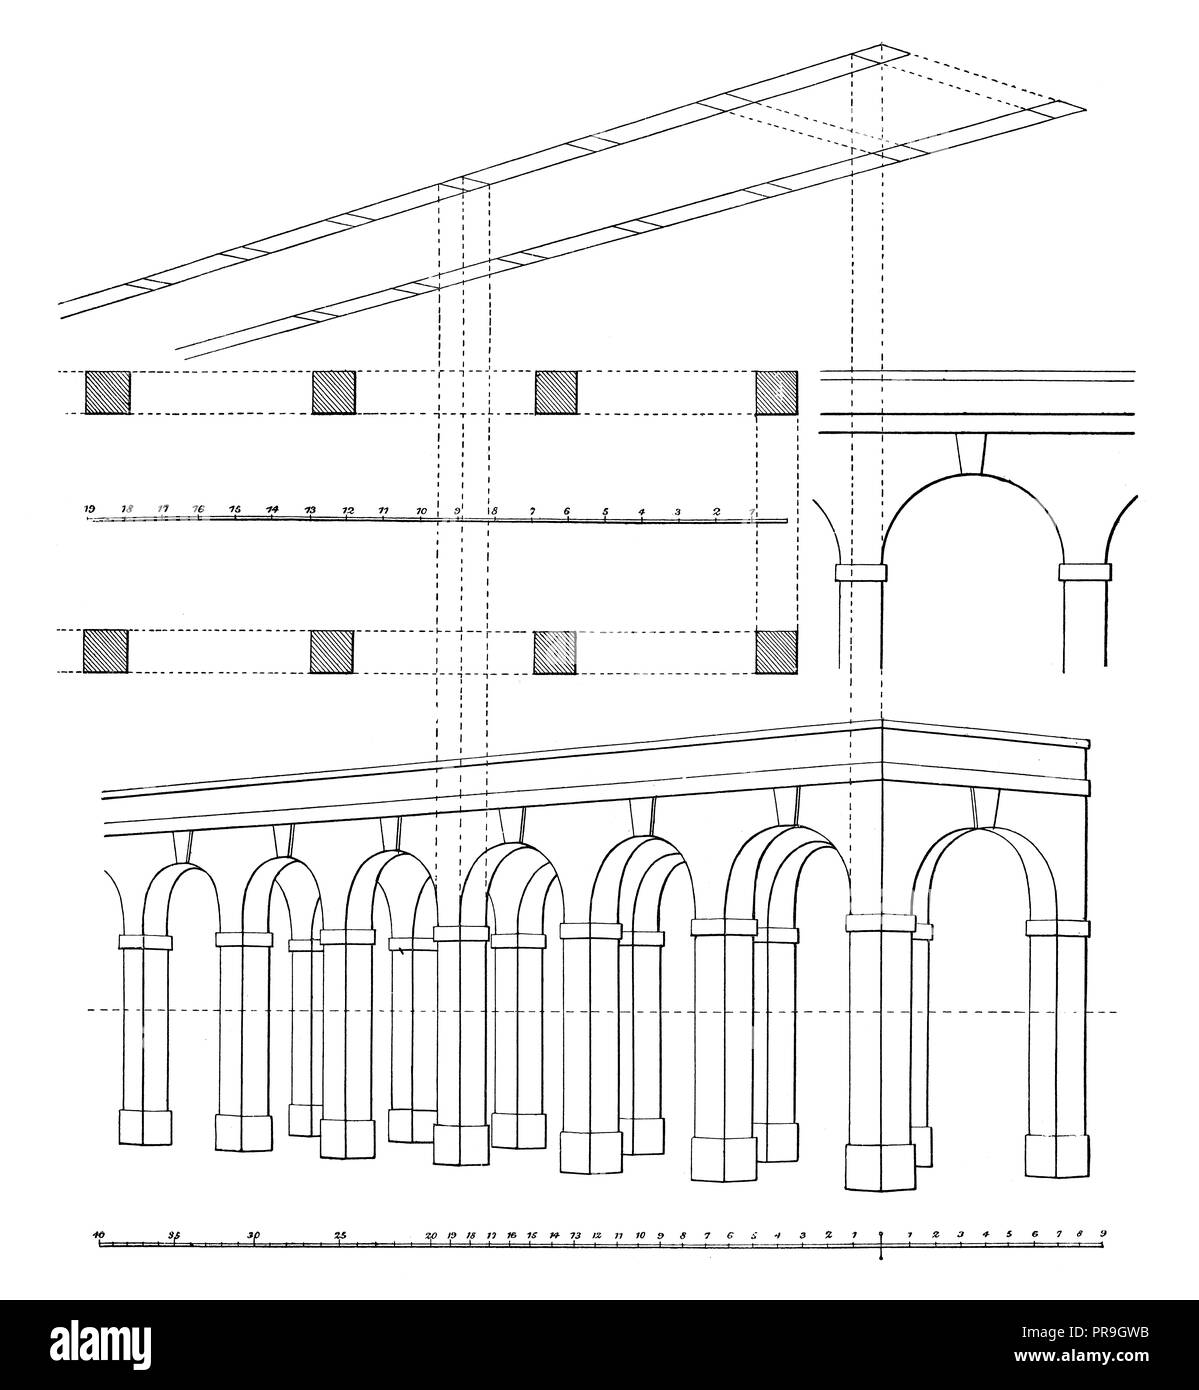 19ème siècle Illustration d'une méthode simple de délimiter les sujets d'architecture en perspective, à laquelle l'échelle habituelle de parties égales sont appli Banque D'Images